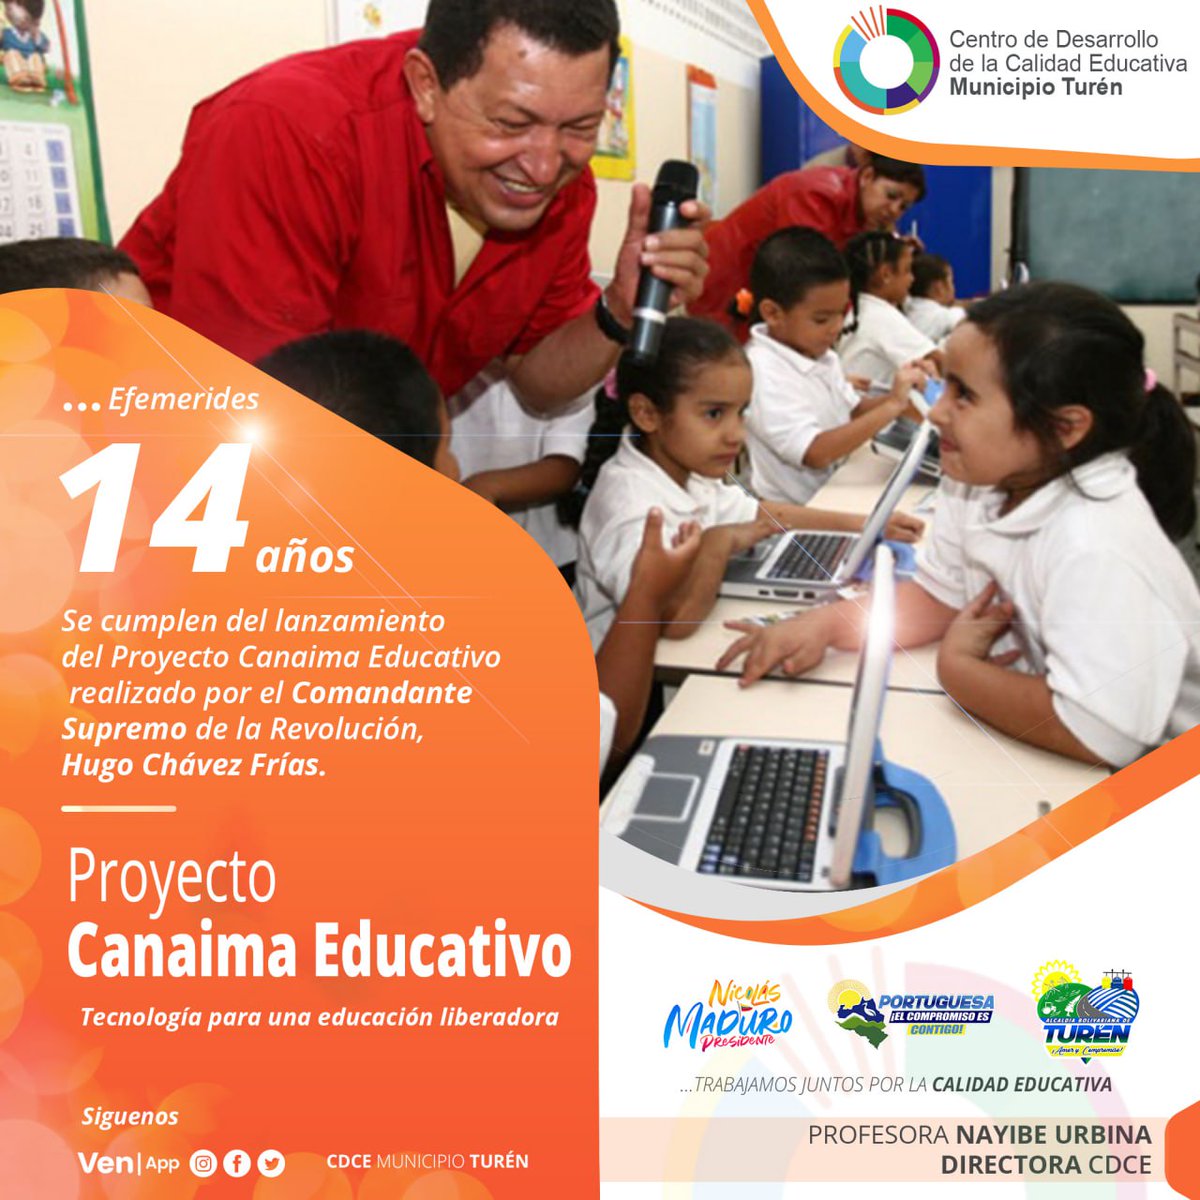 Efemérides... 📆📢

¡Conmemoramos 14 años del Proyecto Canaima Educativo!

Estudiantes con acceso a las Nuevas Tecnologías de la Información (TIC’s) para su aprendizaje, fue una de las premisas del Comandante Hugo Chávez y fue un hecho con el Proyecto Canaima .

#DialogoDePaz